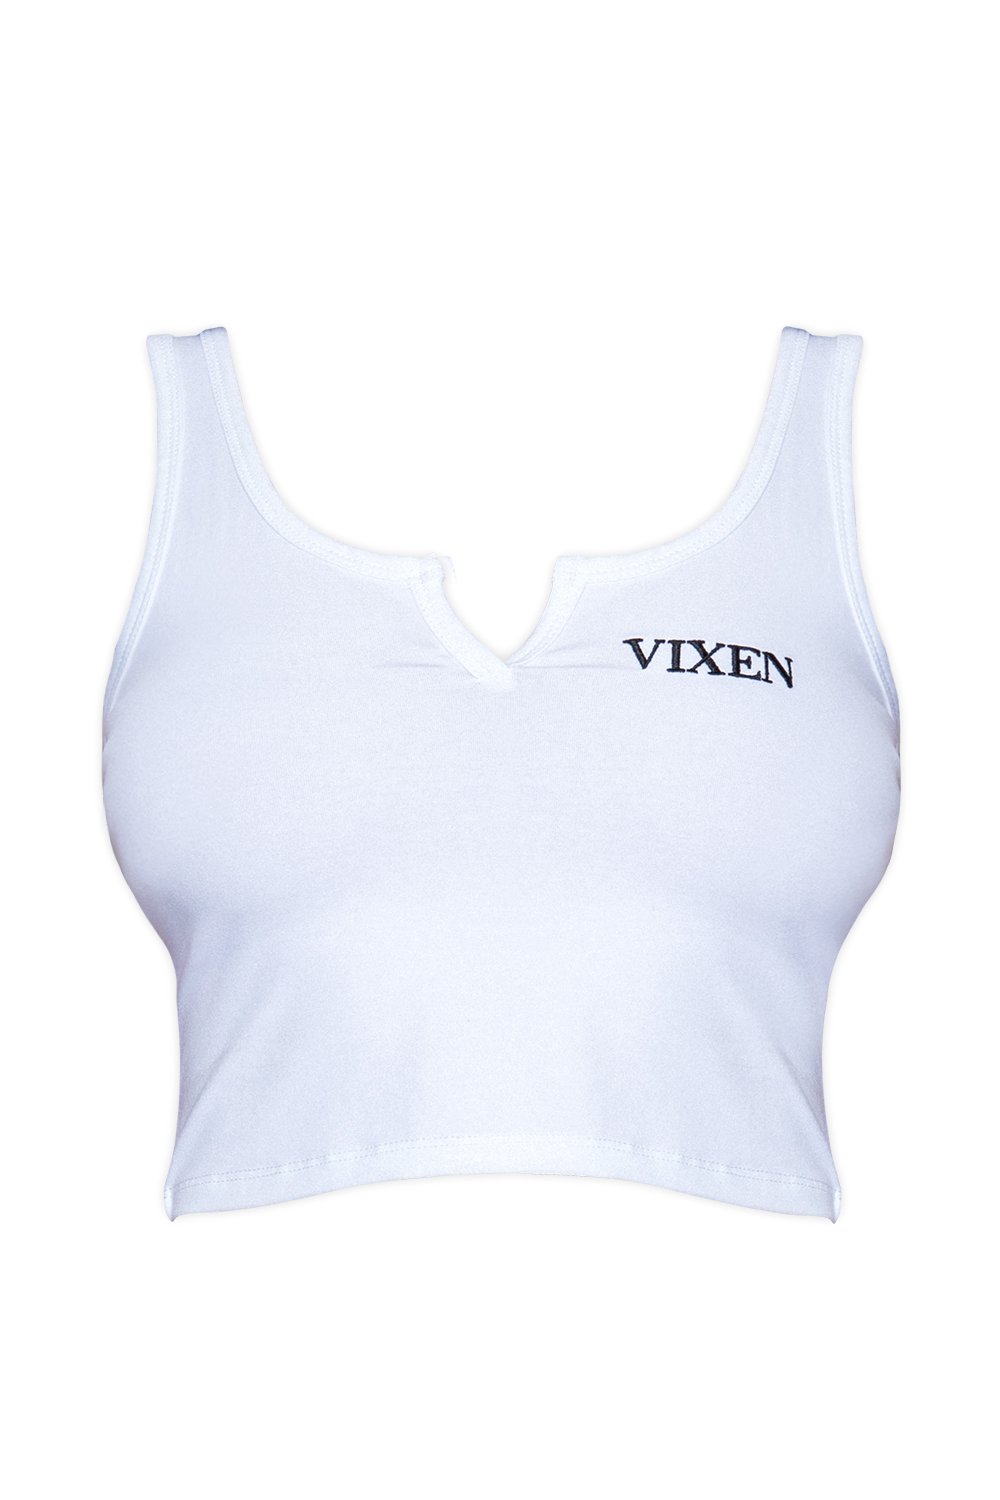 Vixen Logo Tank Top Tops VIXEN 